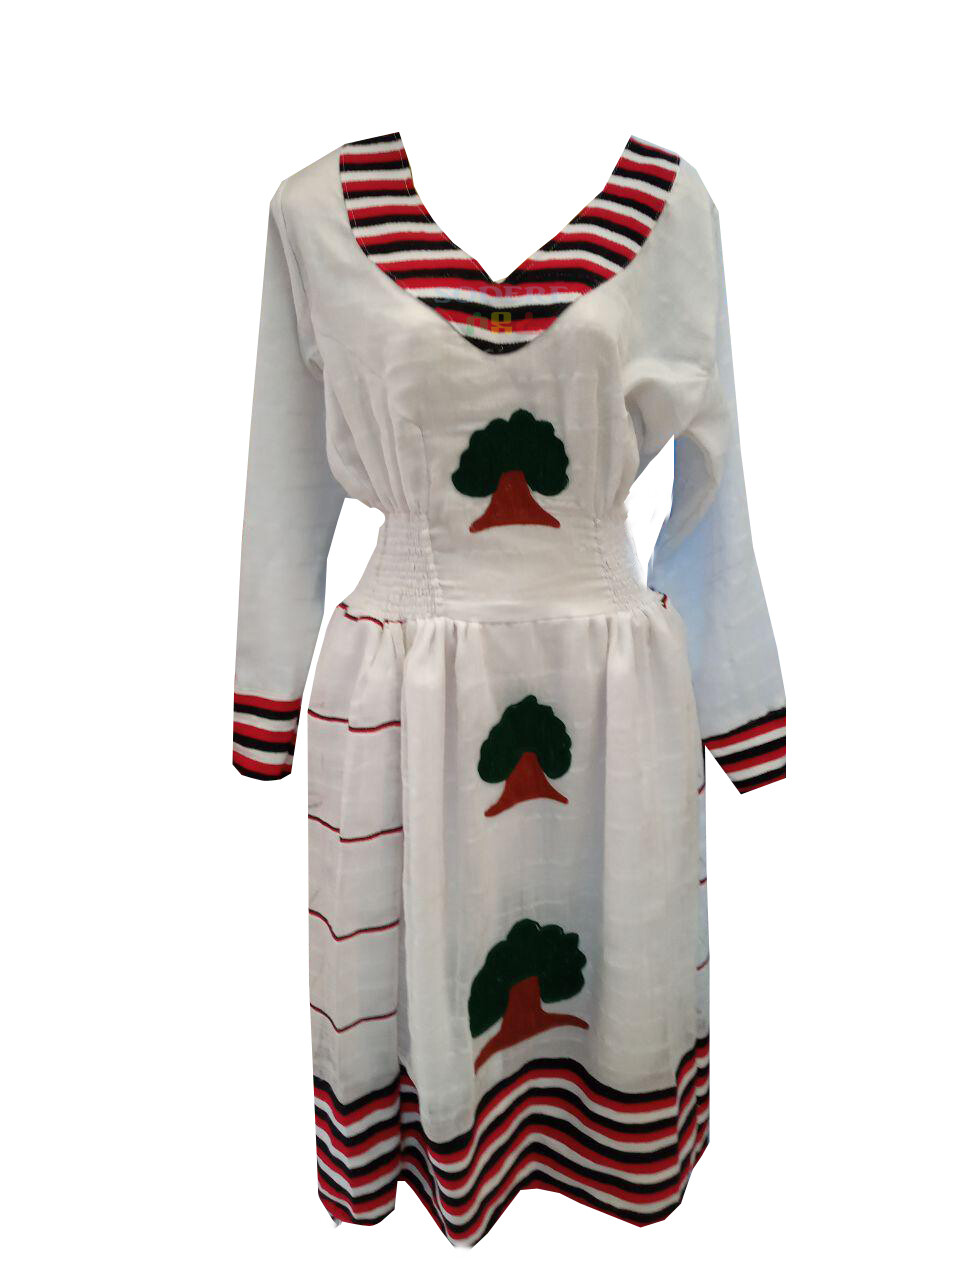 የኦሮሞ ባህላዊ ልብስ Oromo Traditional Clothes